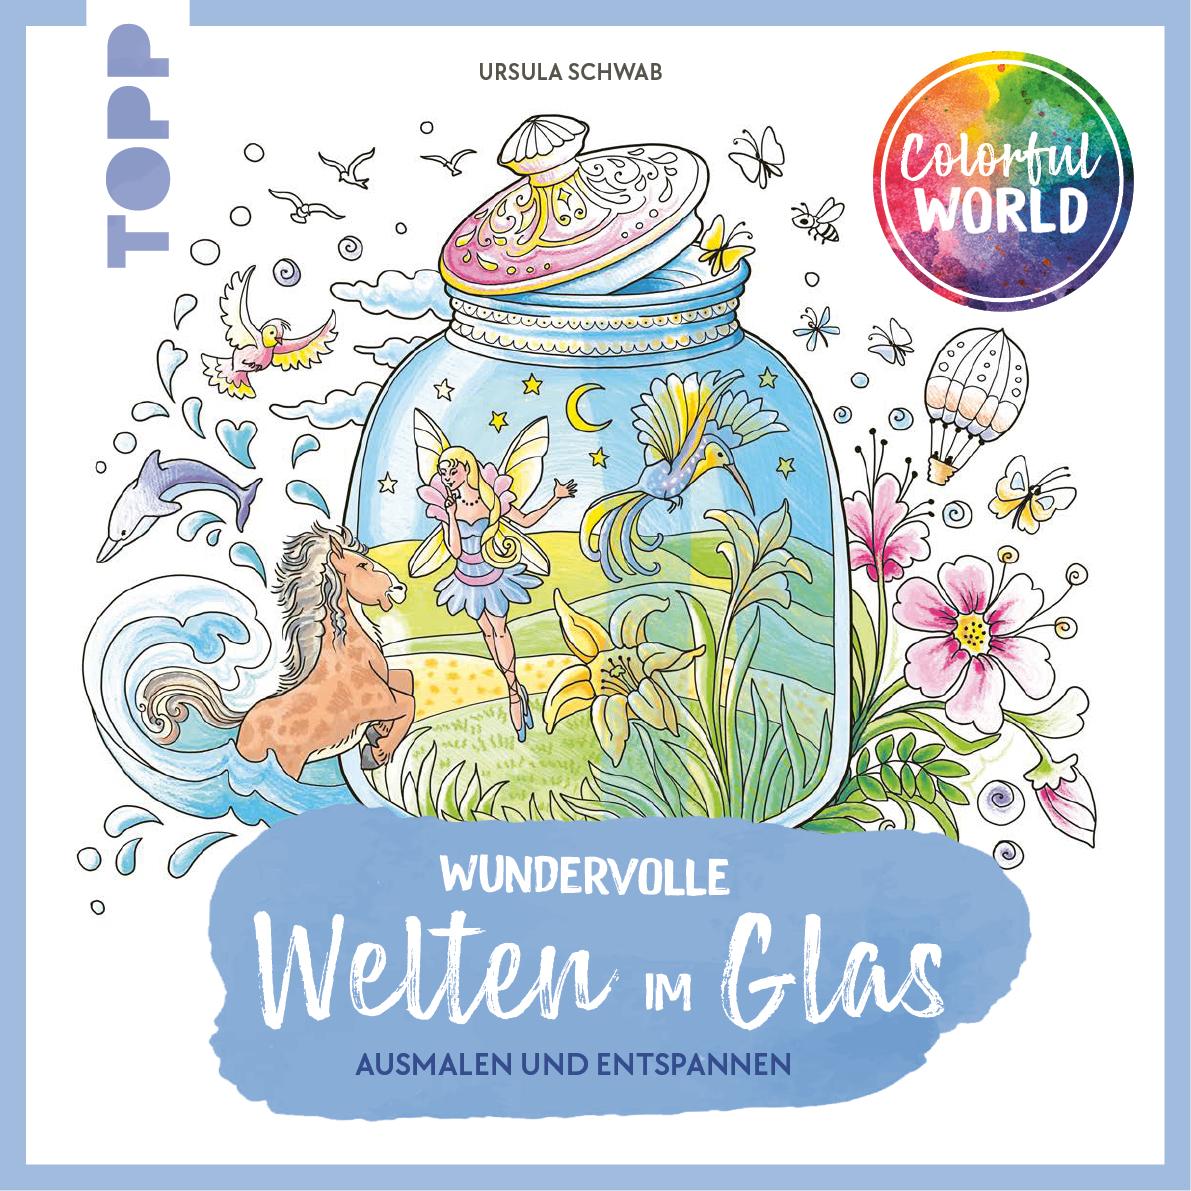 Carte Colorful World - Wundervolle Welten im Glas 